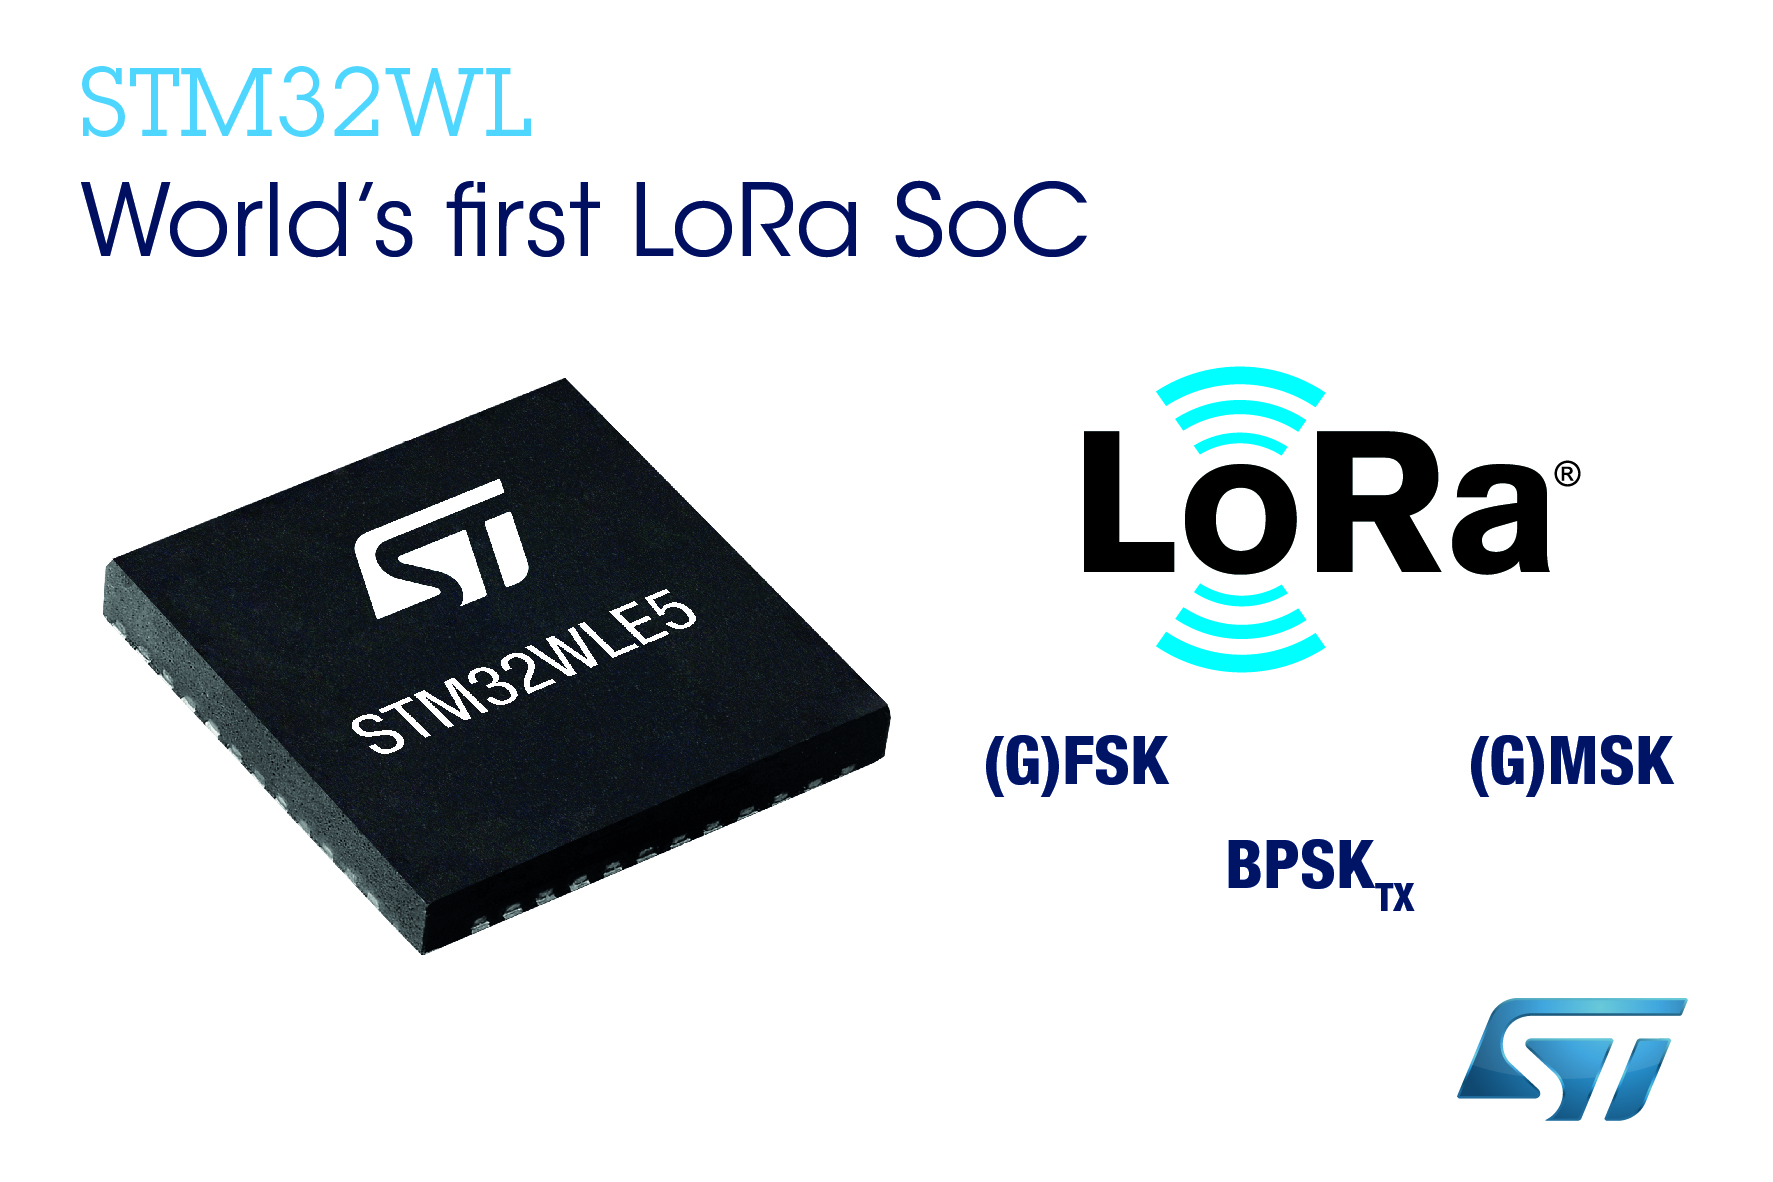 STマイクロエレクトロニクス、LoRa®無線通信に対応したスマートIoT機器の開発を加速させるSTM32 マイコンを発表